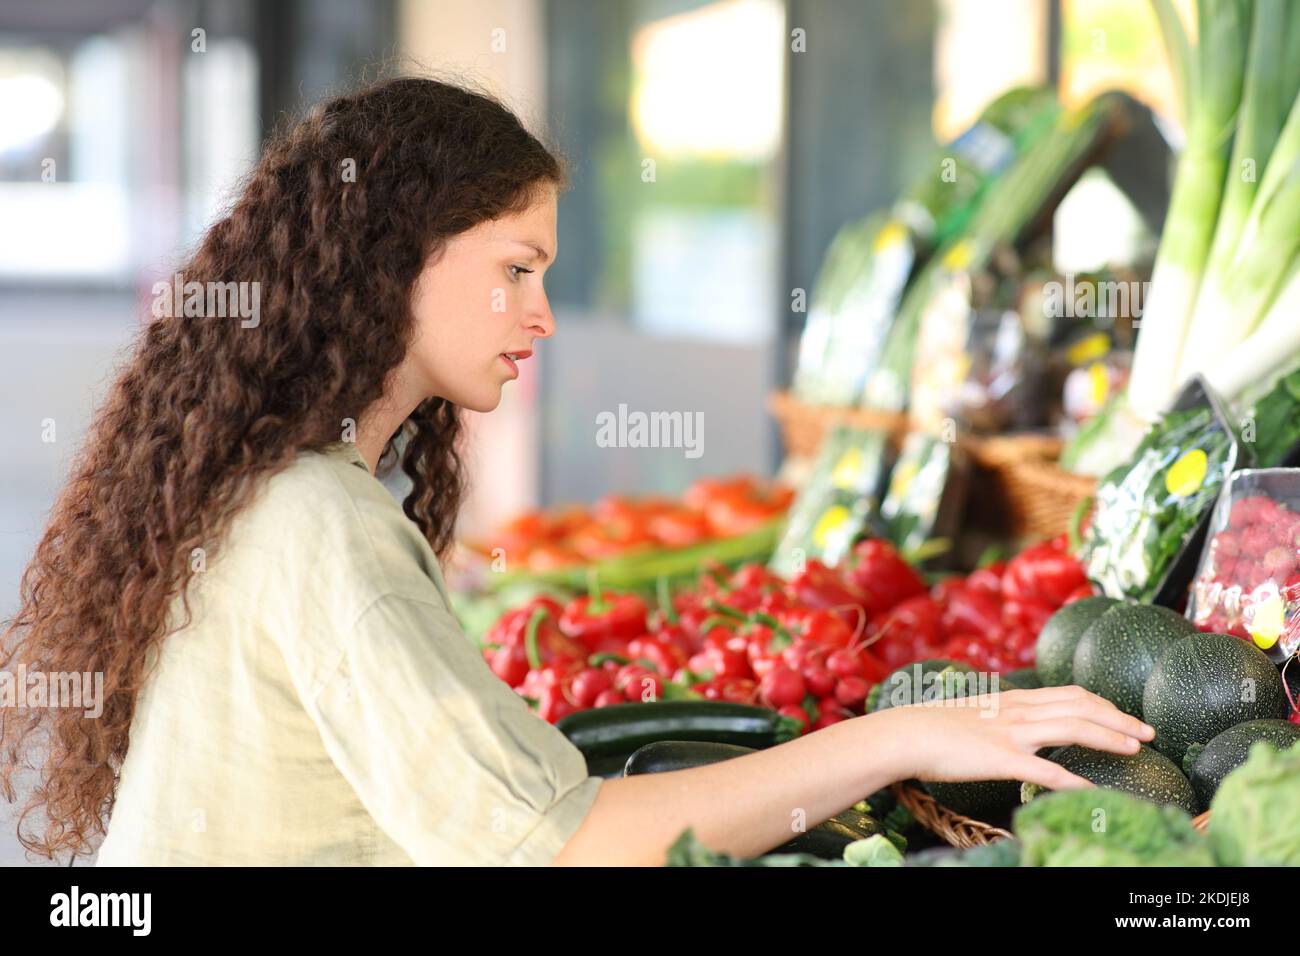 Frau, die Gemüse in einer Greengrocery kauft und auswählt Stockfoto